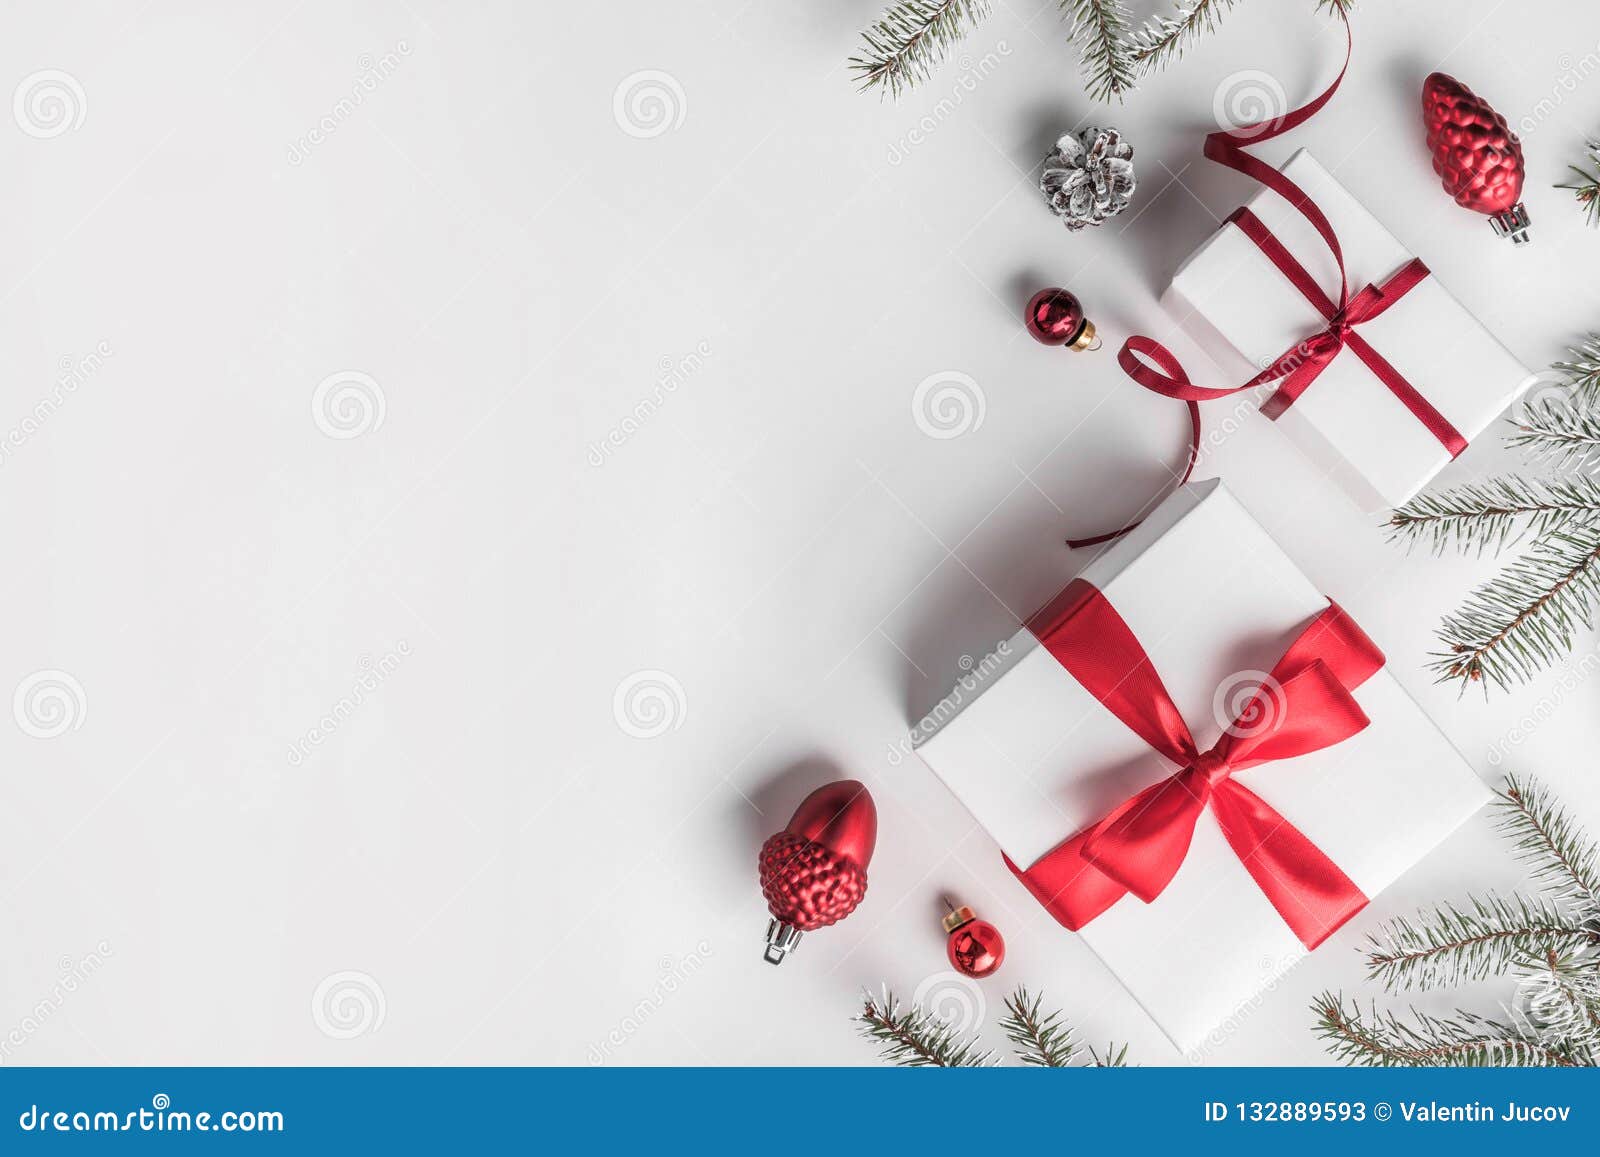 Nếu bạn đang muốn tìm một hình ảnh bao bọc trong không khí Giáng Sinh, hộp quà Giáng Sinh trên nền trắng chắc chắn sẽ làm bạn thích thú. Hiển thị hình ảnh này và chào mừng mùa đông đến với các quà tặng tuyệt vời, hạnh phúc và niềm vui.